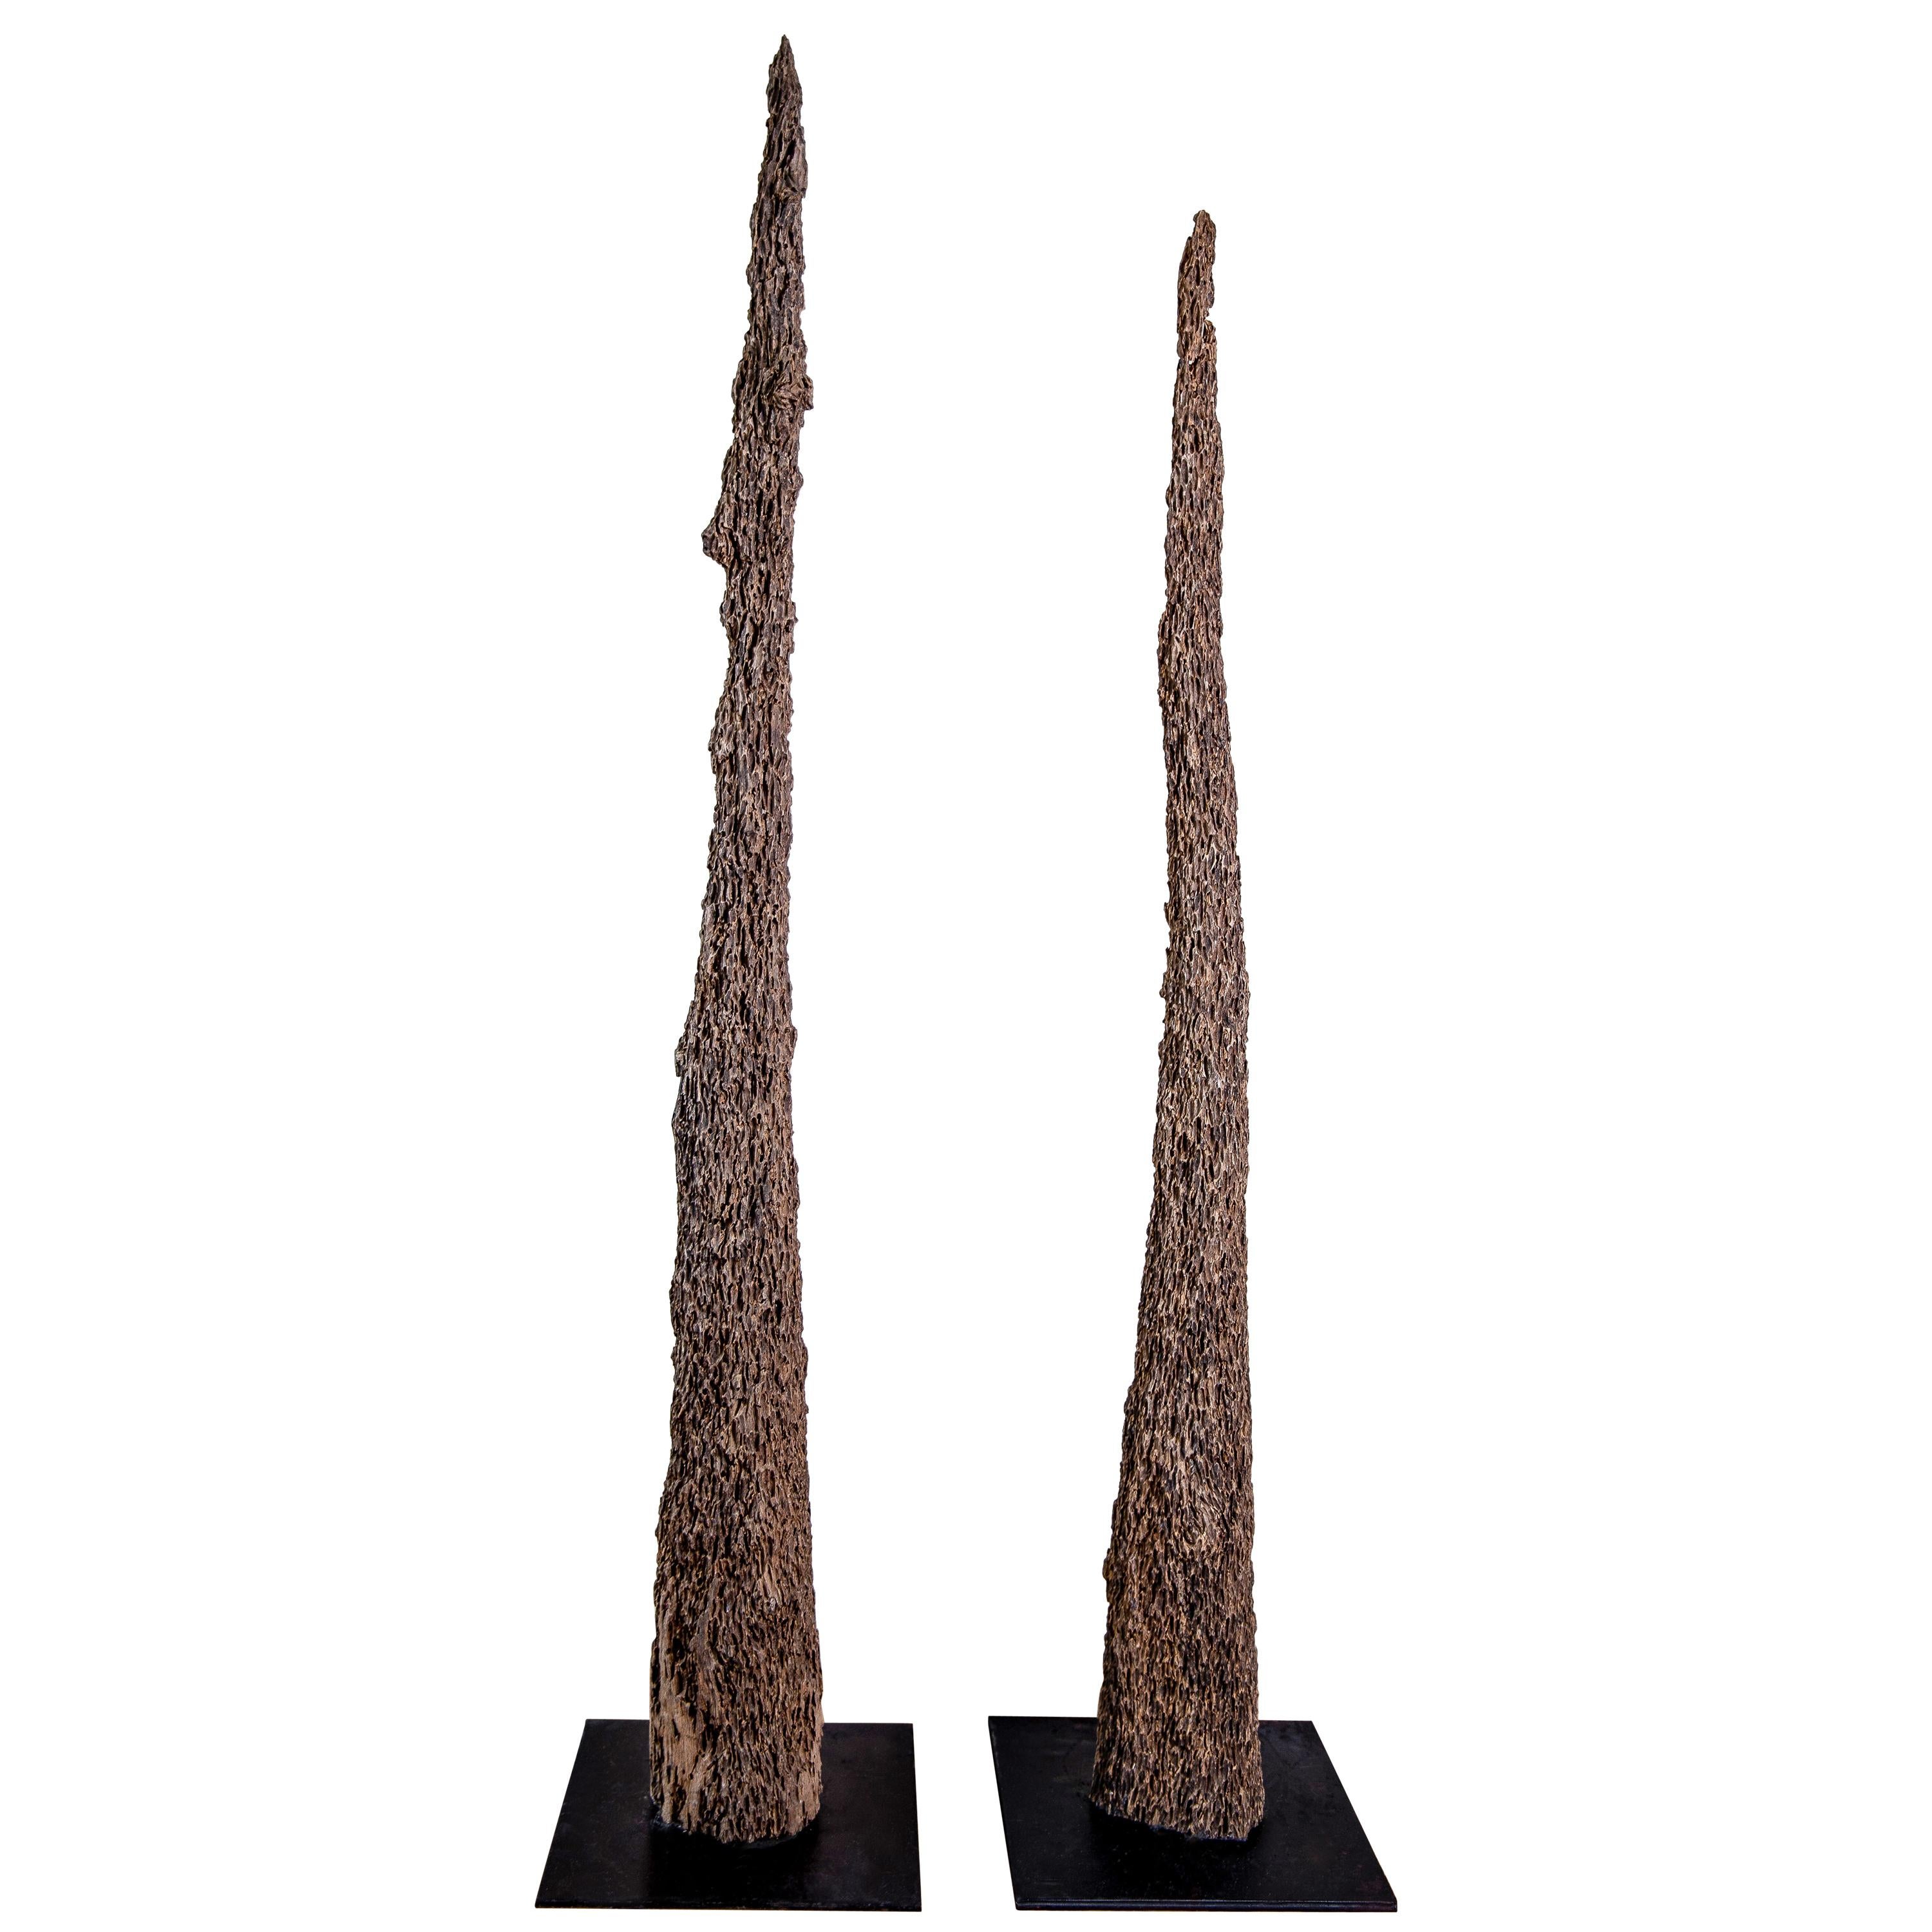 Pair of Eroded Cedar Mussel Poles